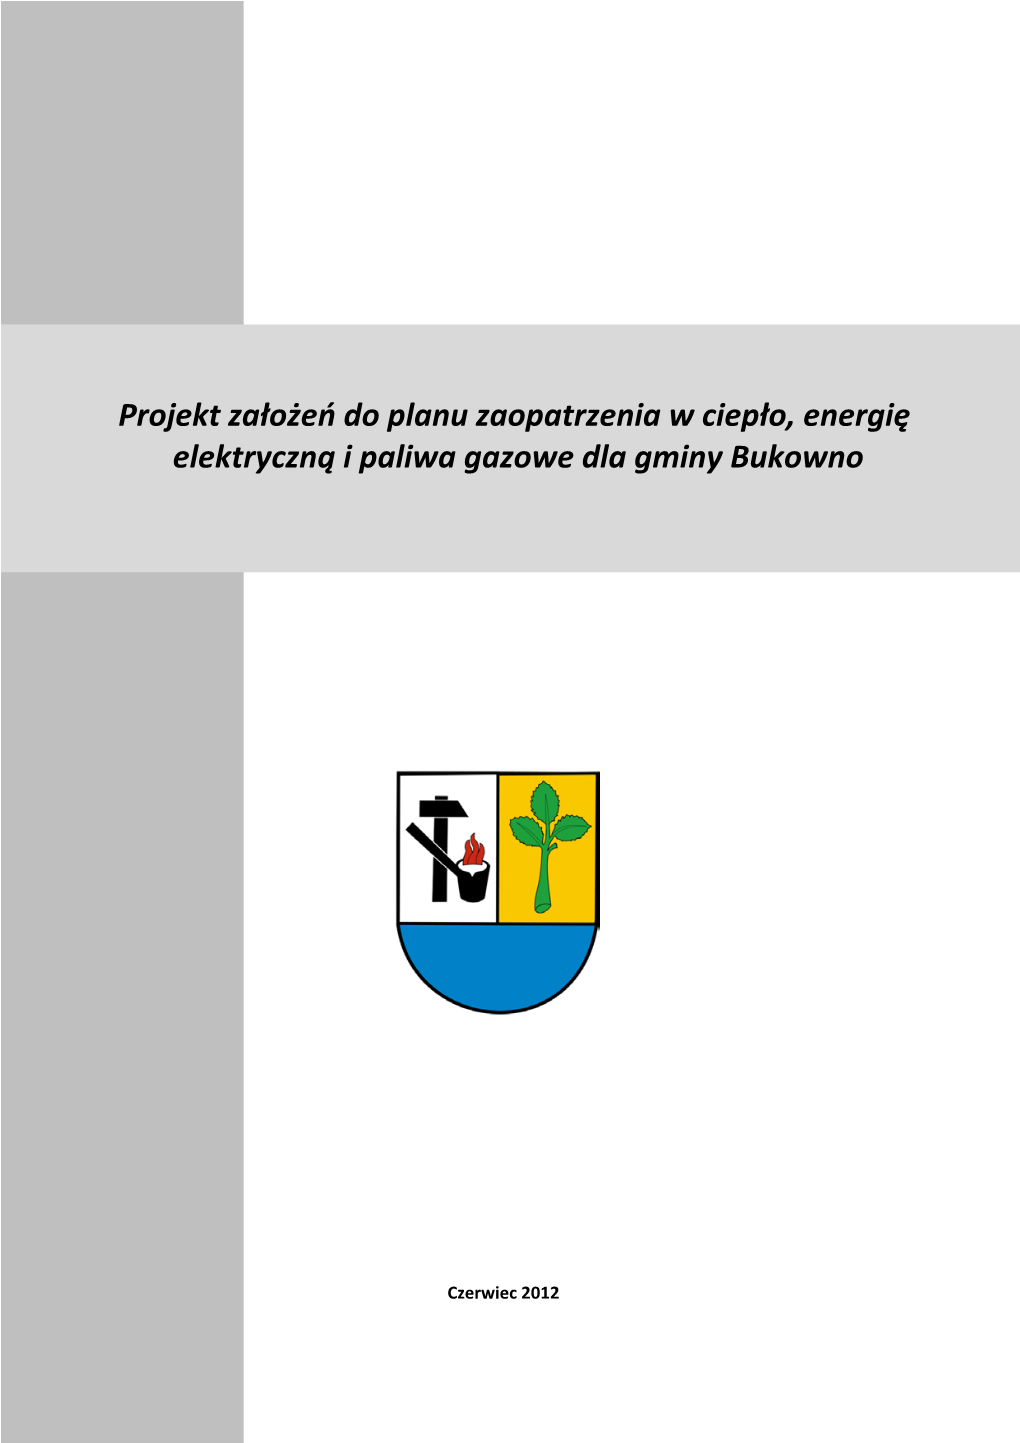 Projekt Założeń Do Planu Zaopatrzenia W Ciepło, Energię Elektryczną I Paliwa Gazowe Dla Gminy Bukowno